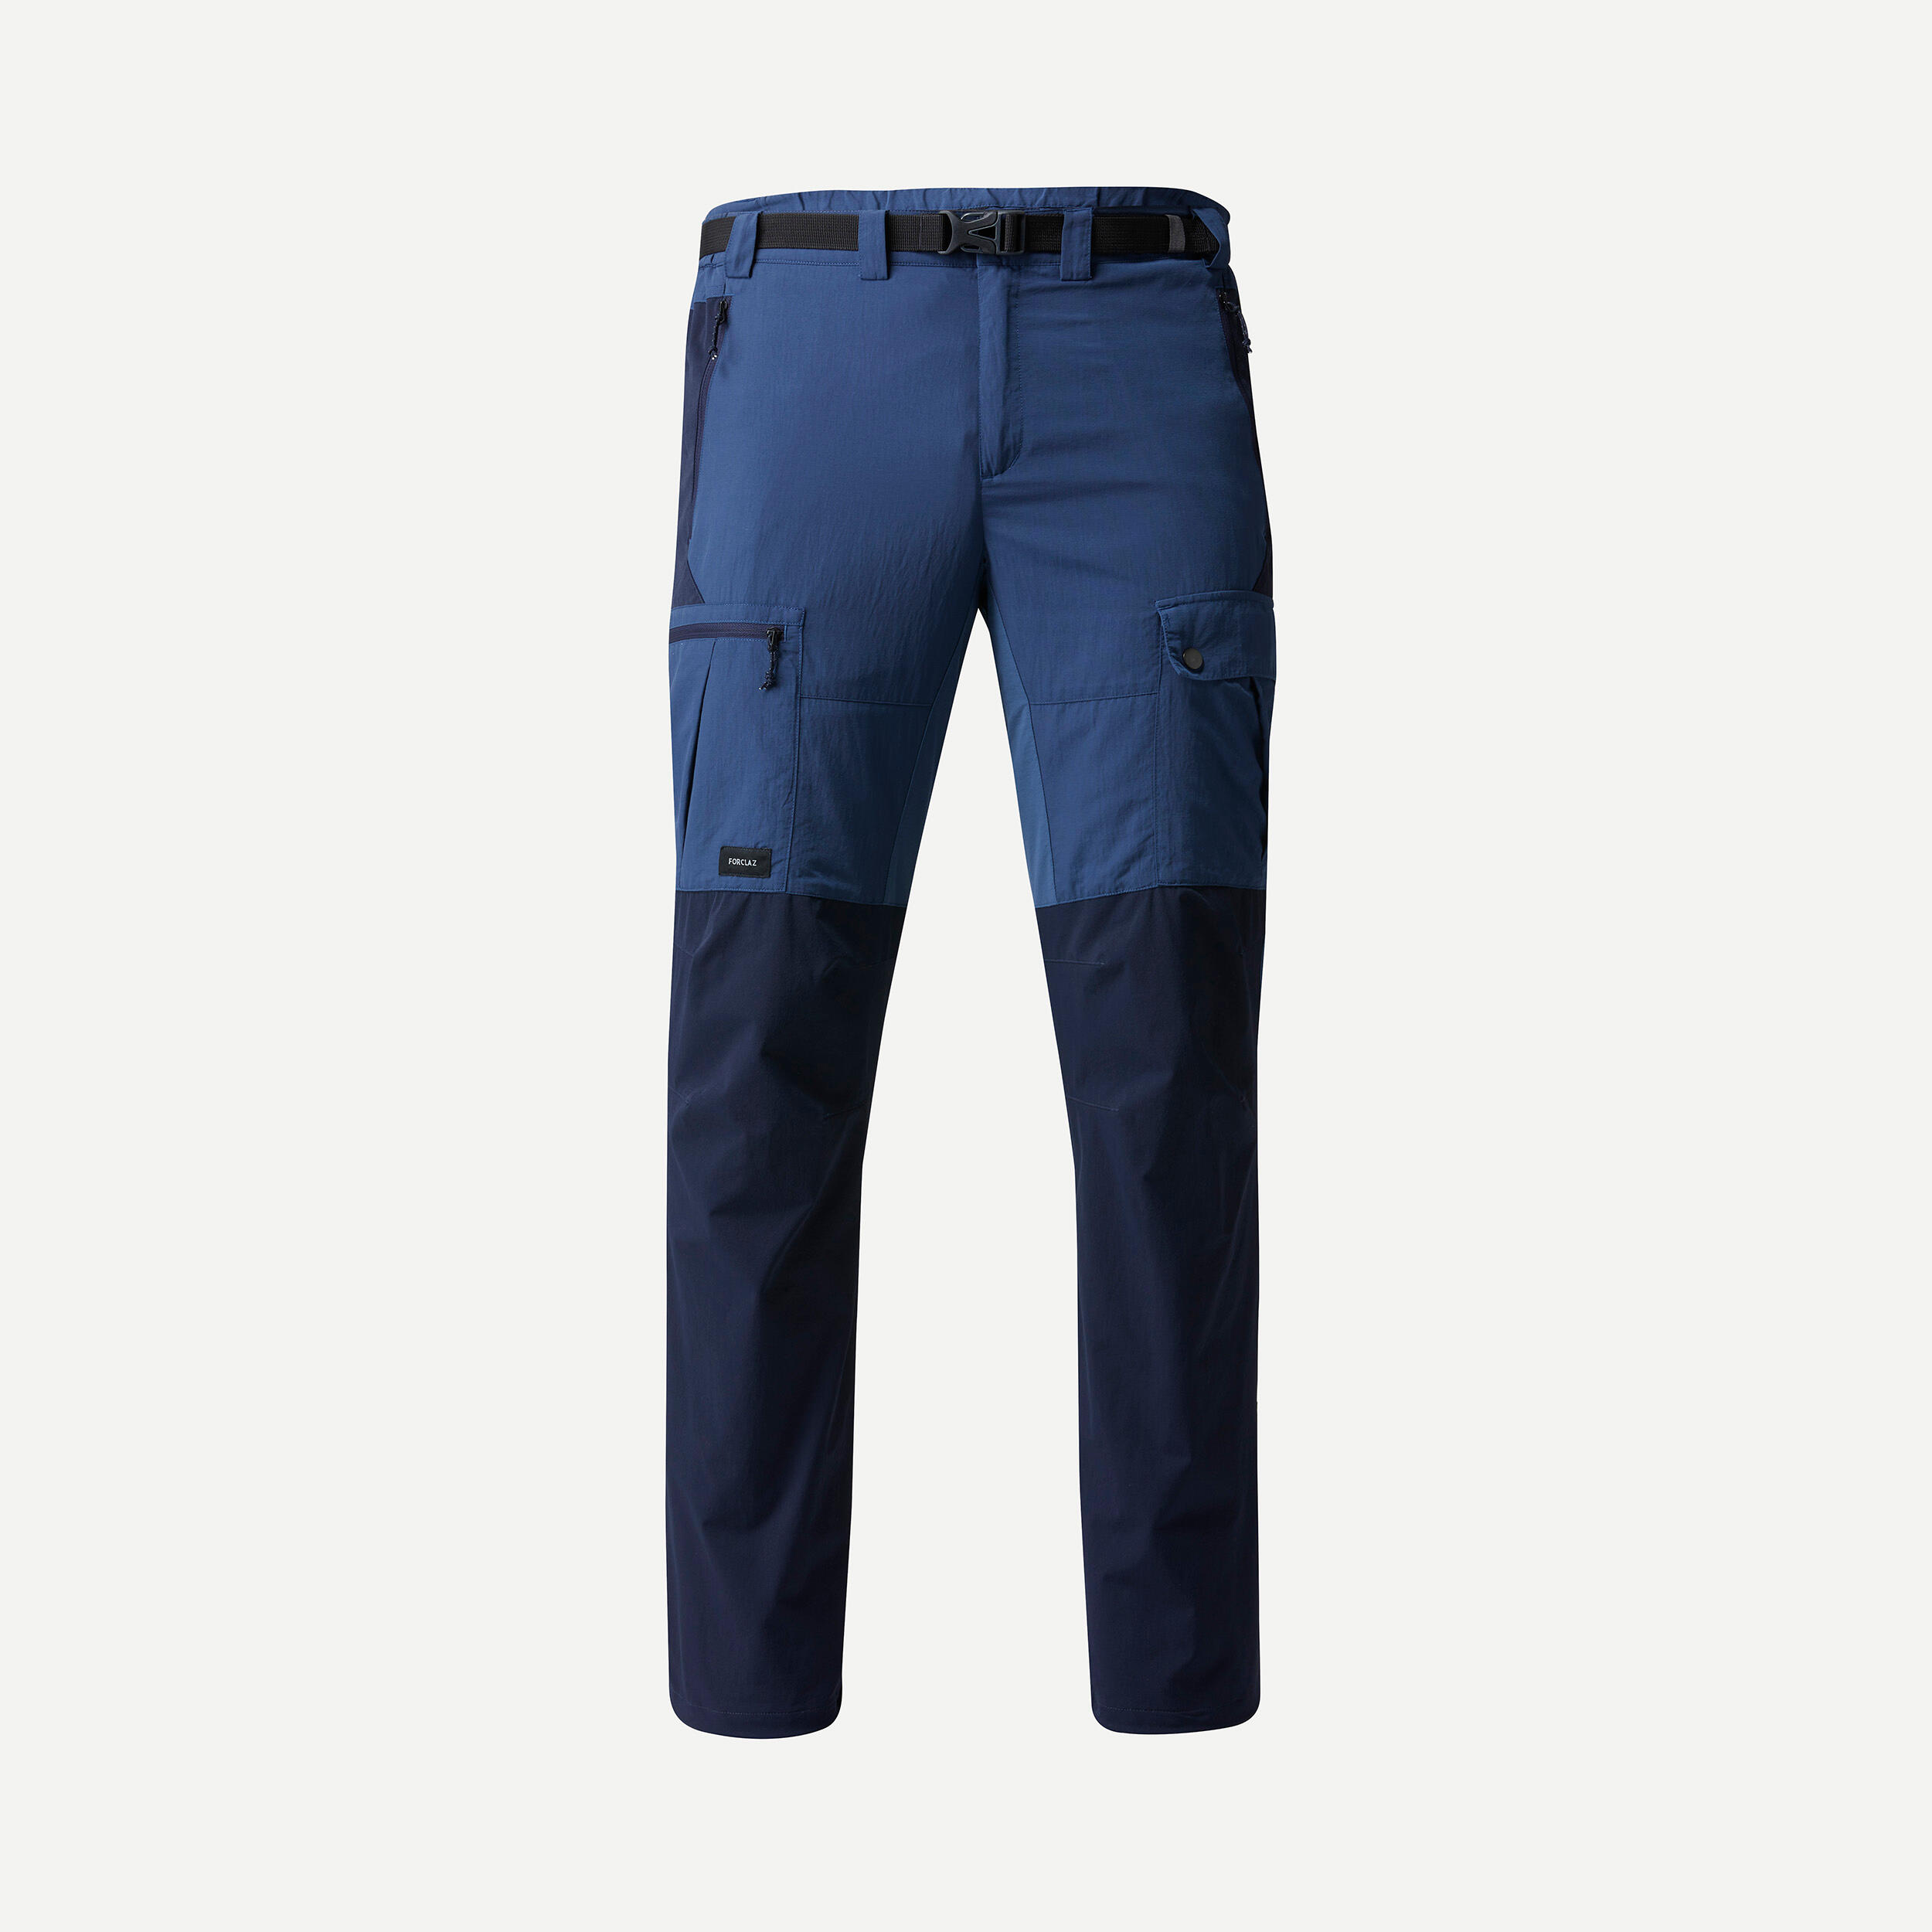 Buy Jessie Kidden Hiking Pants Mens, Outdoor UPF 50+ Quick Dry Lightweight  Zip Off Convertible Fishing Cargo Pants with Belt #818-Dark Grey,32 at  Amazon.in